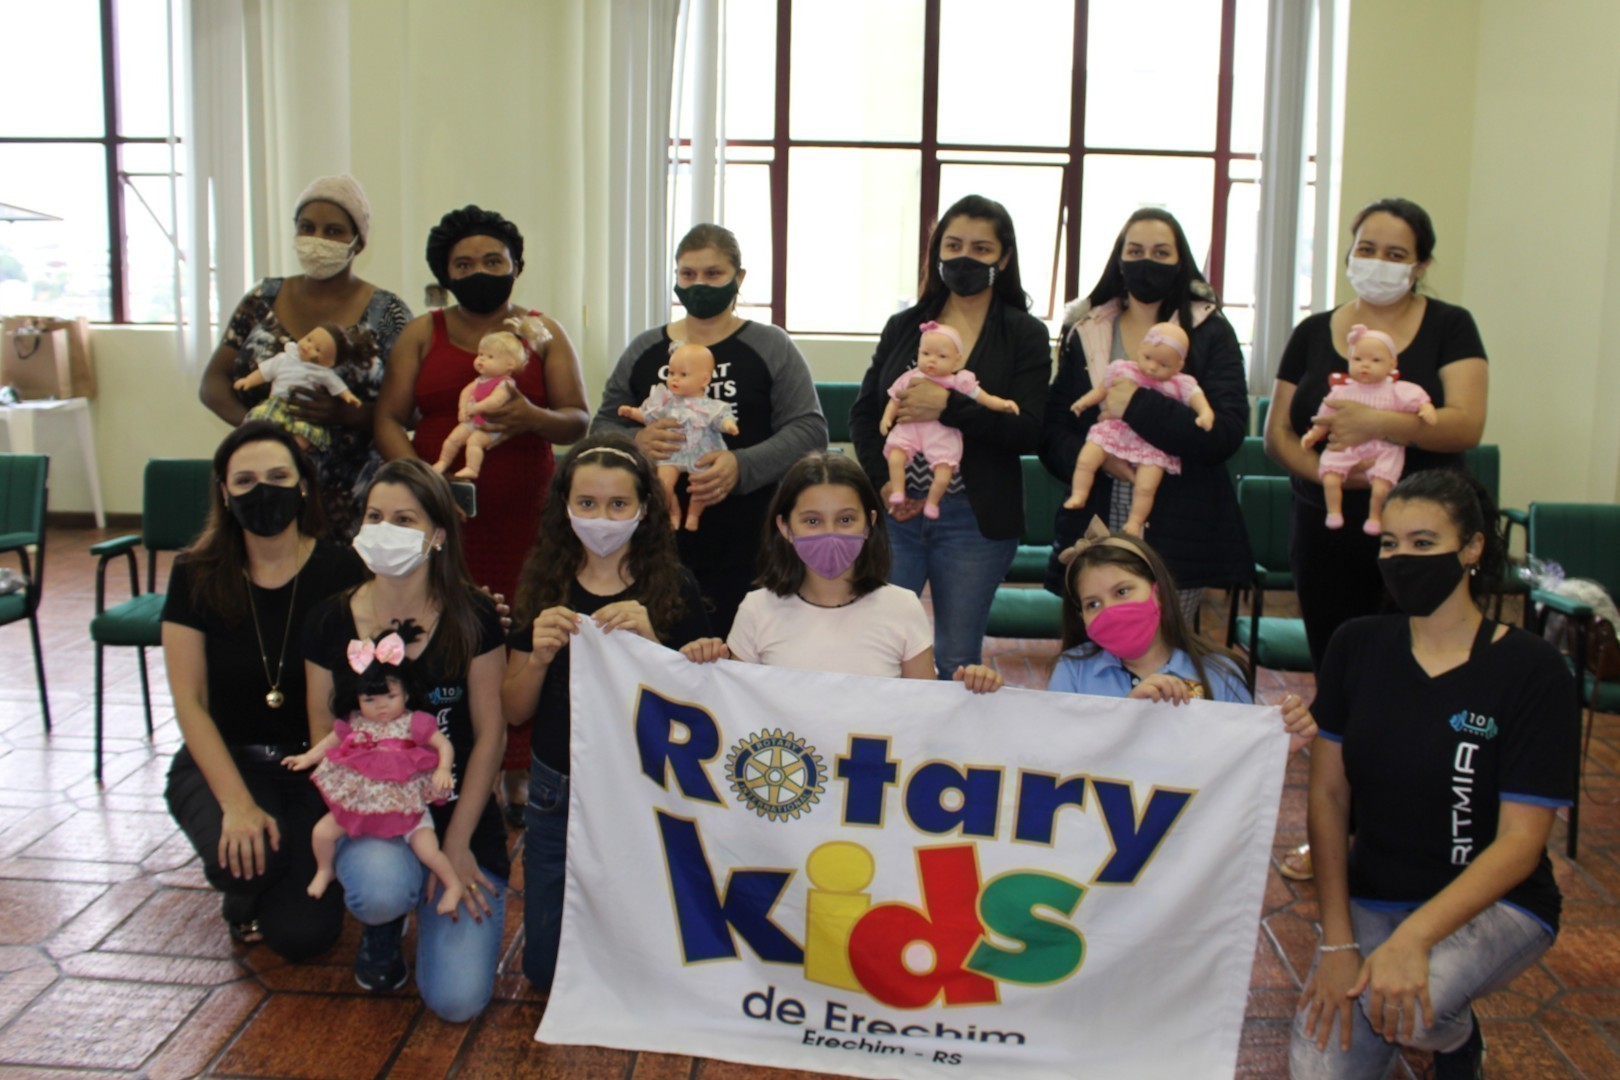 Equipe organizadora com integrantes do Rotary Kids